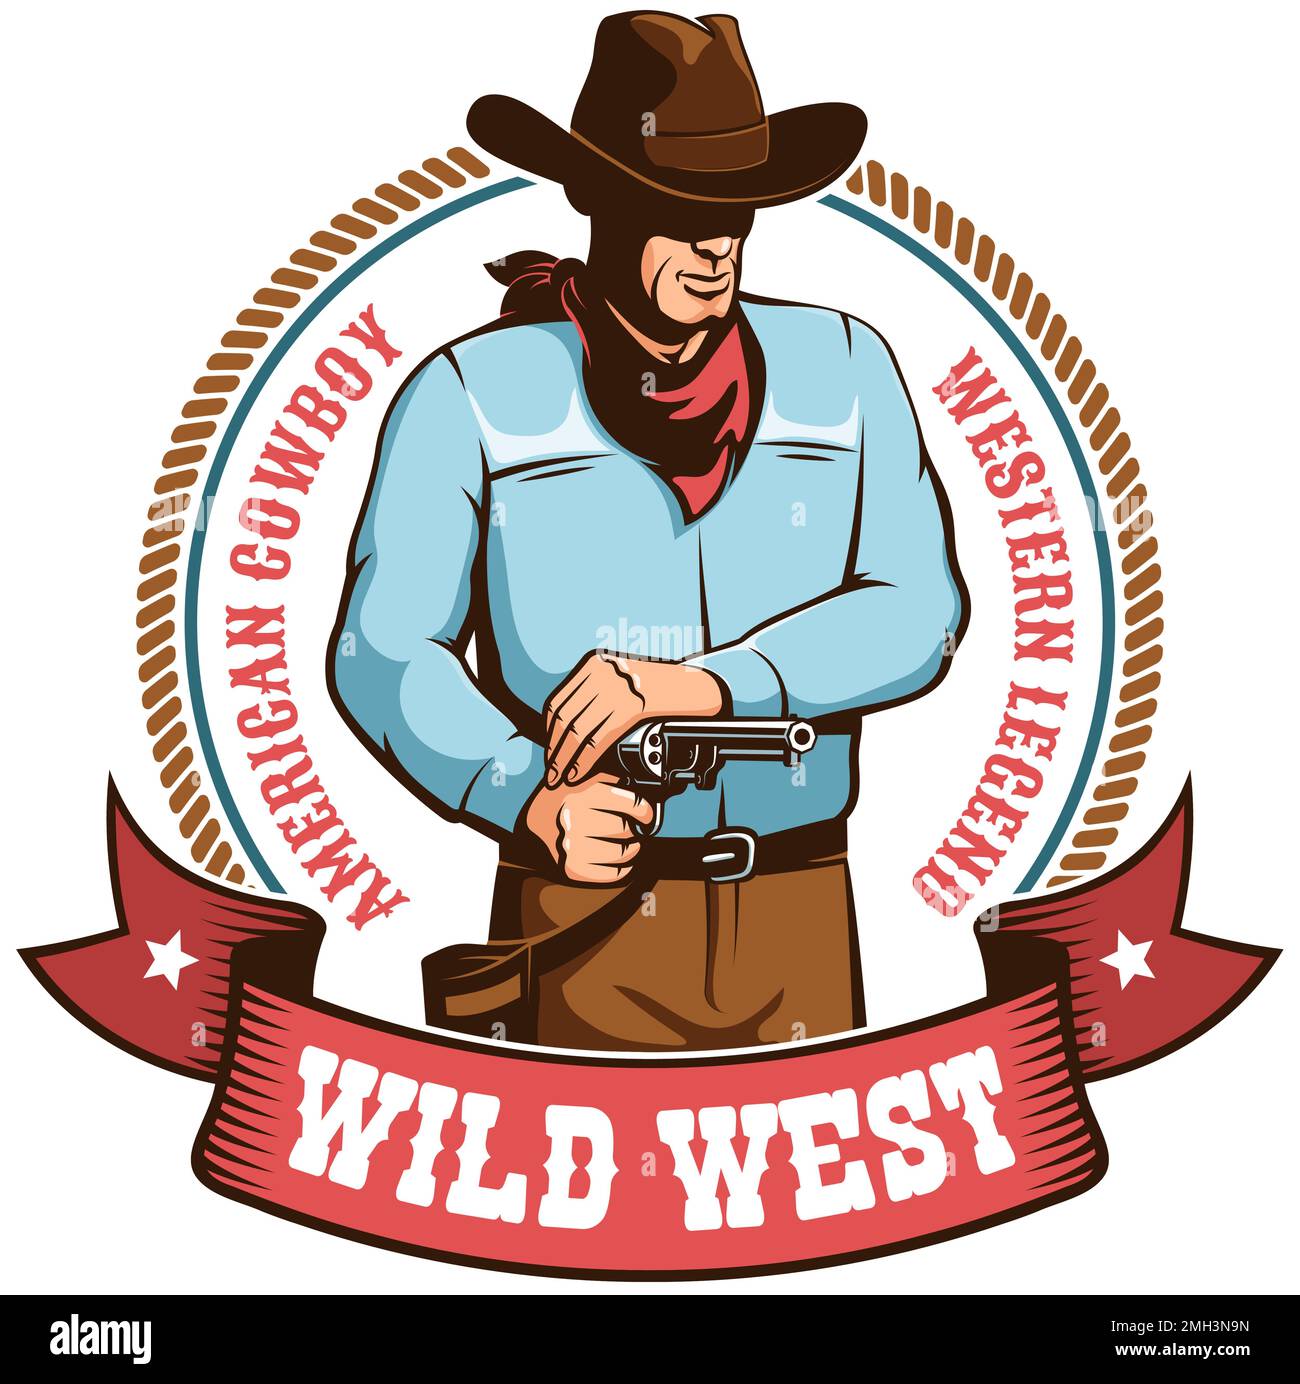 Cowboy retro badge Stock Vector